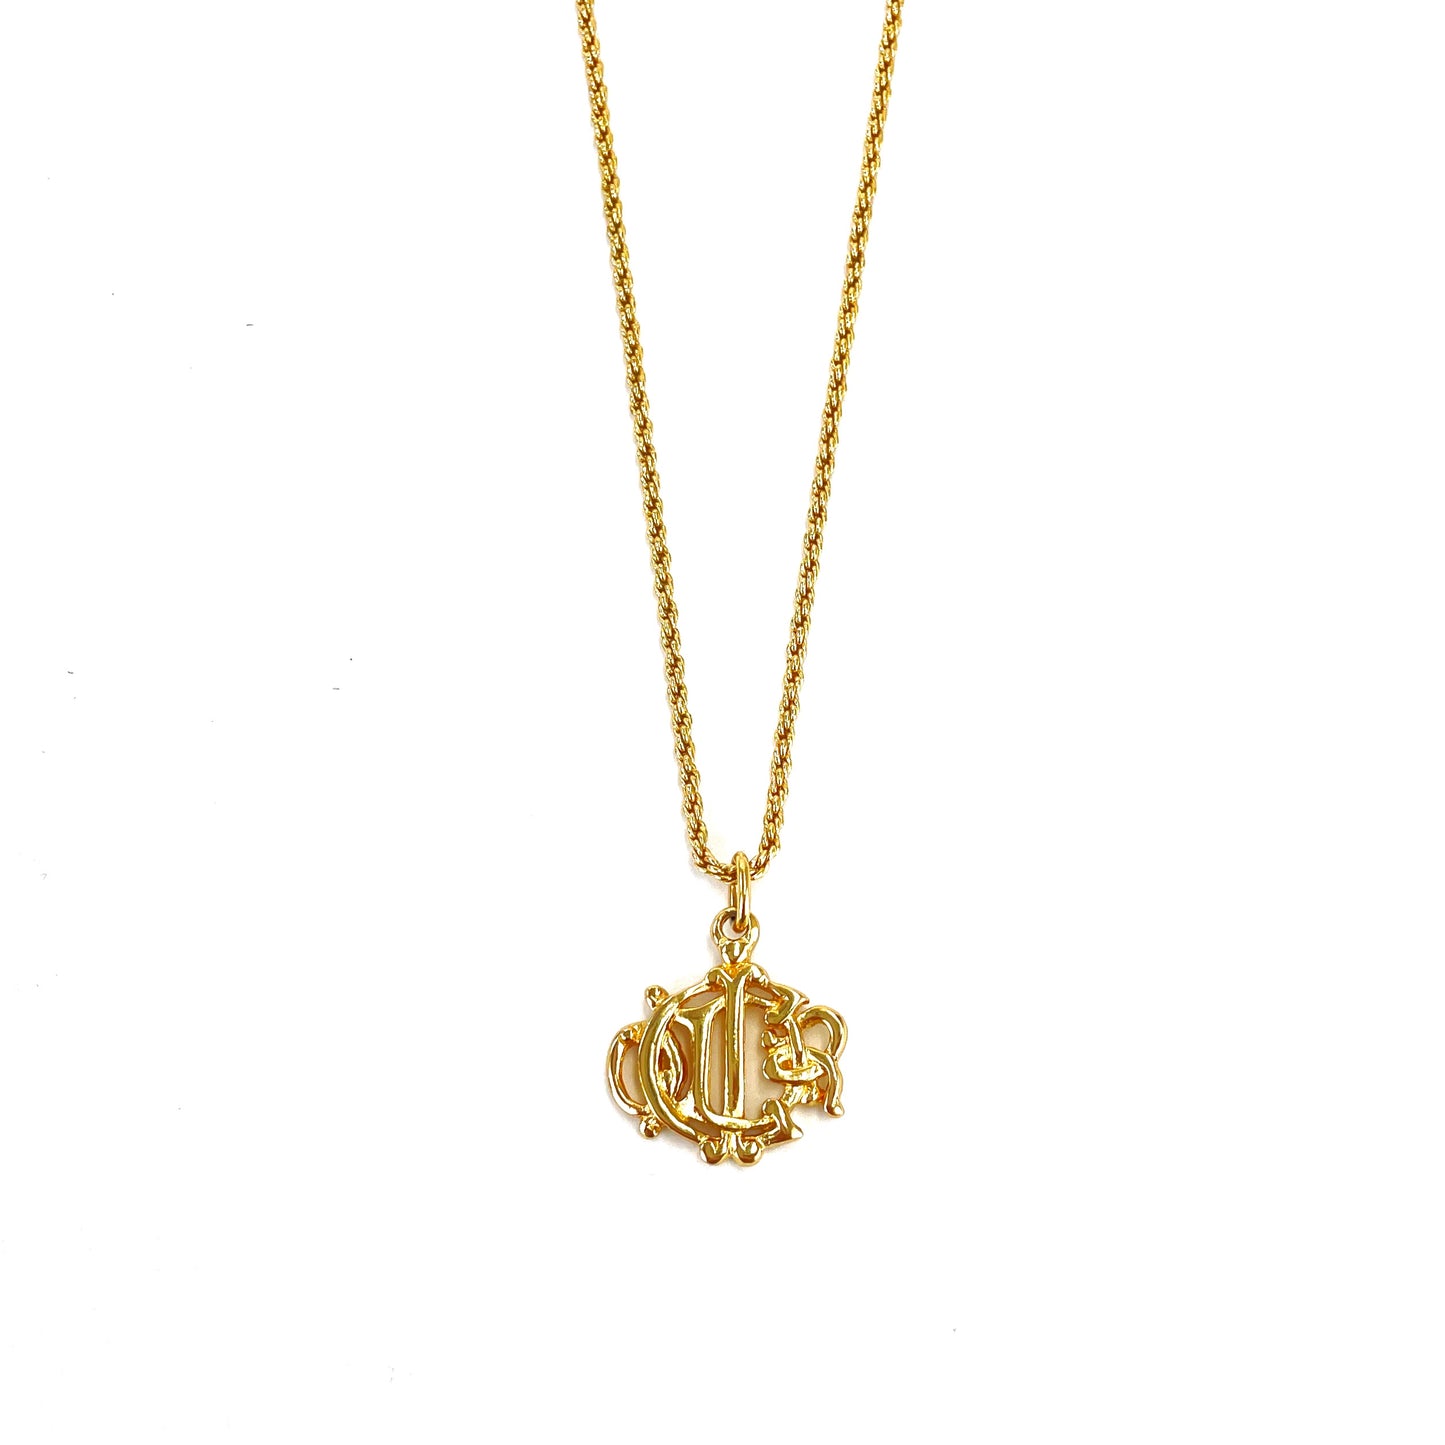 Christian Dior emblem motif necklace gold vintage old tditpk